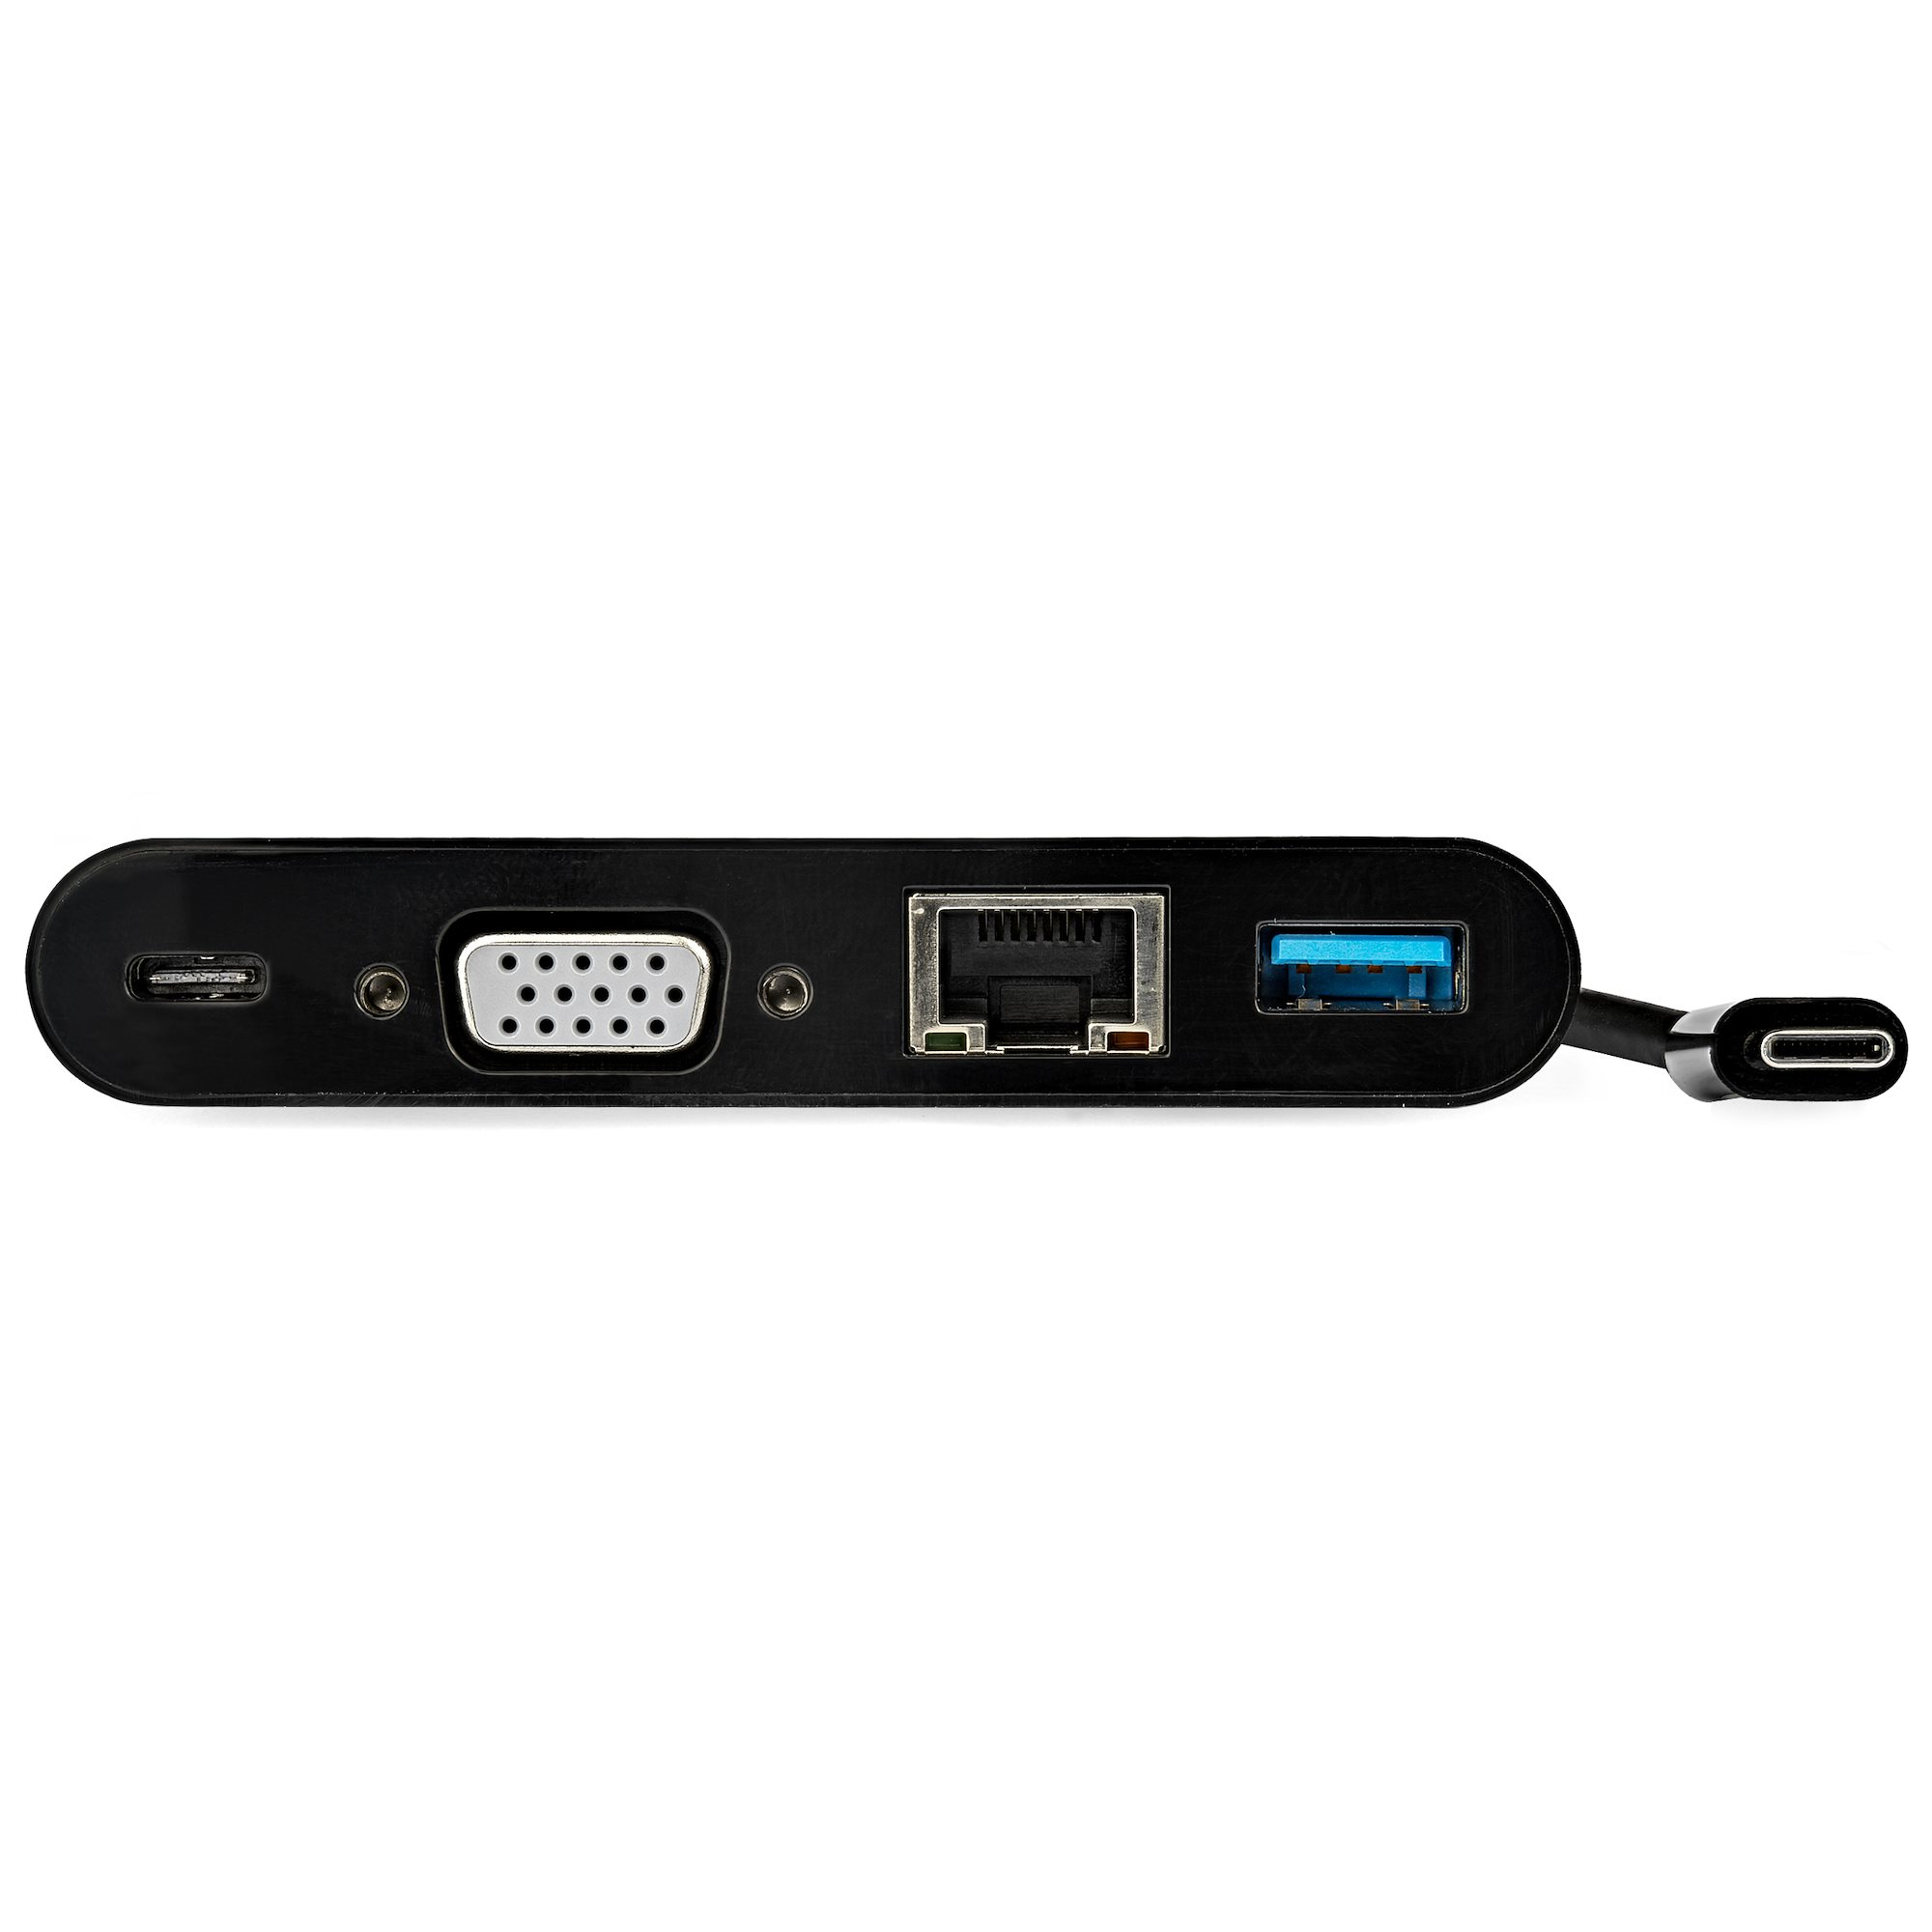 StarTech.com 3 Port USB-C Hub with Gigabit Ethernet & 60W Power